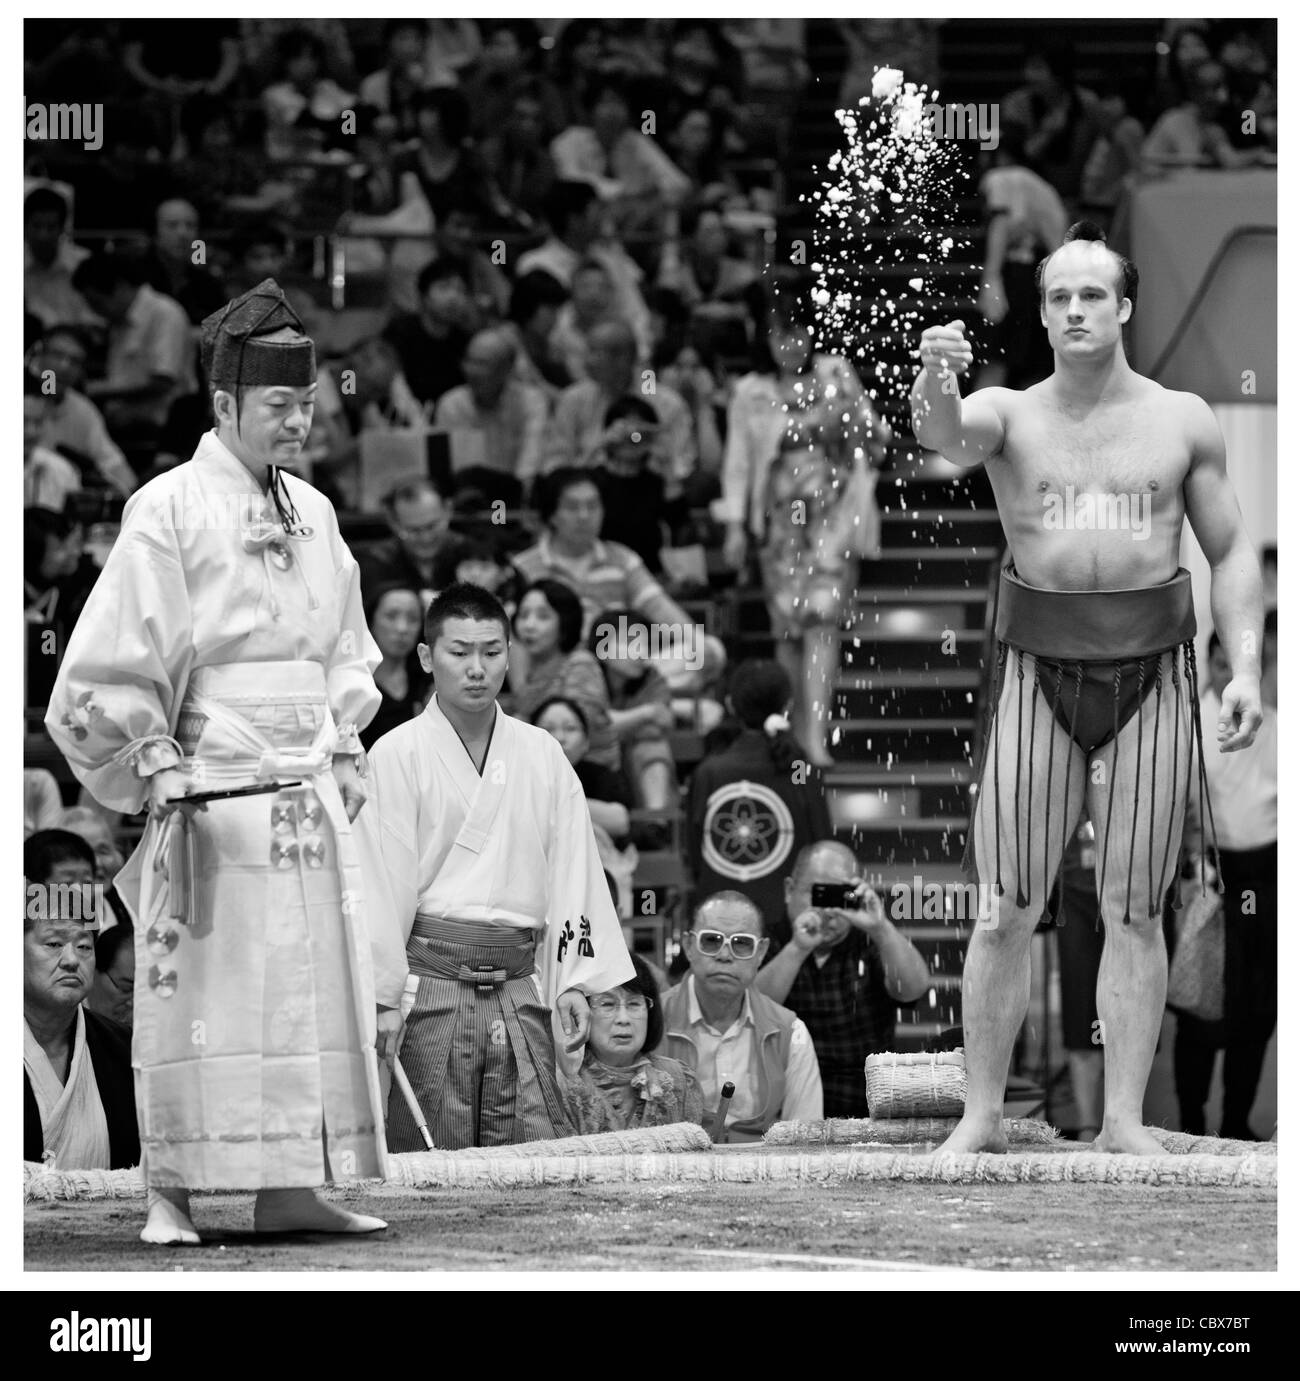 Ceca lottatore di sumo takanoyama sale di proiezione per purificare l'anello (dohyo) - ryogoku kokugikan, Tokyo, Giappone Foto Stock